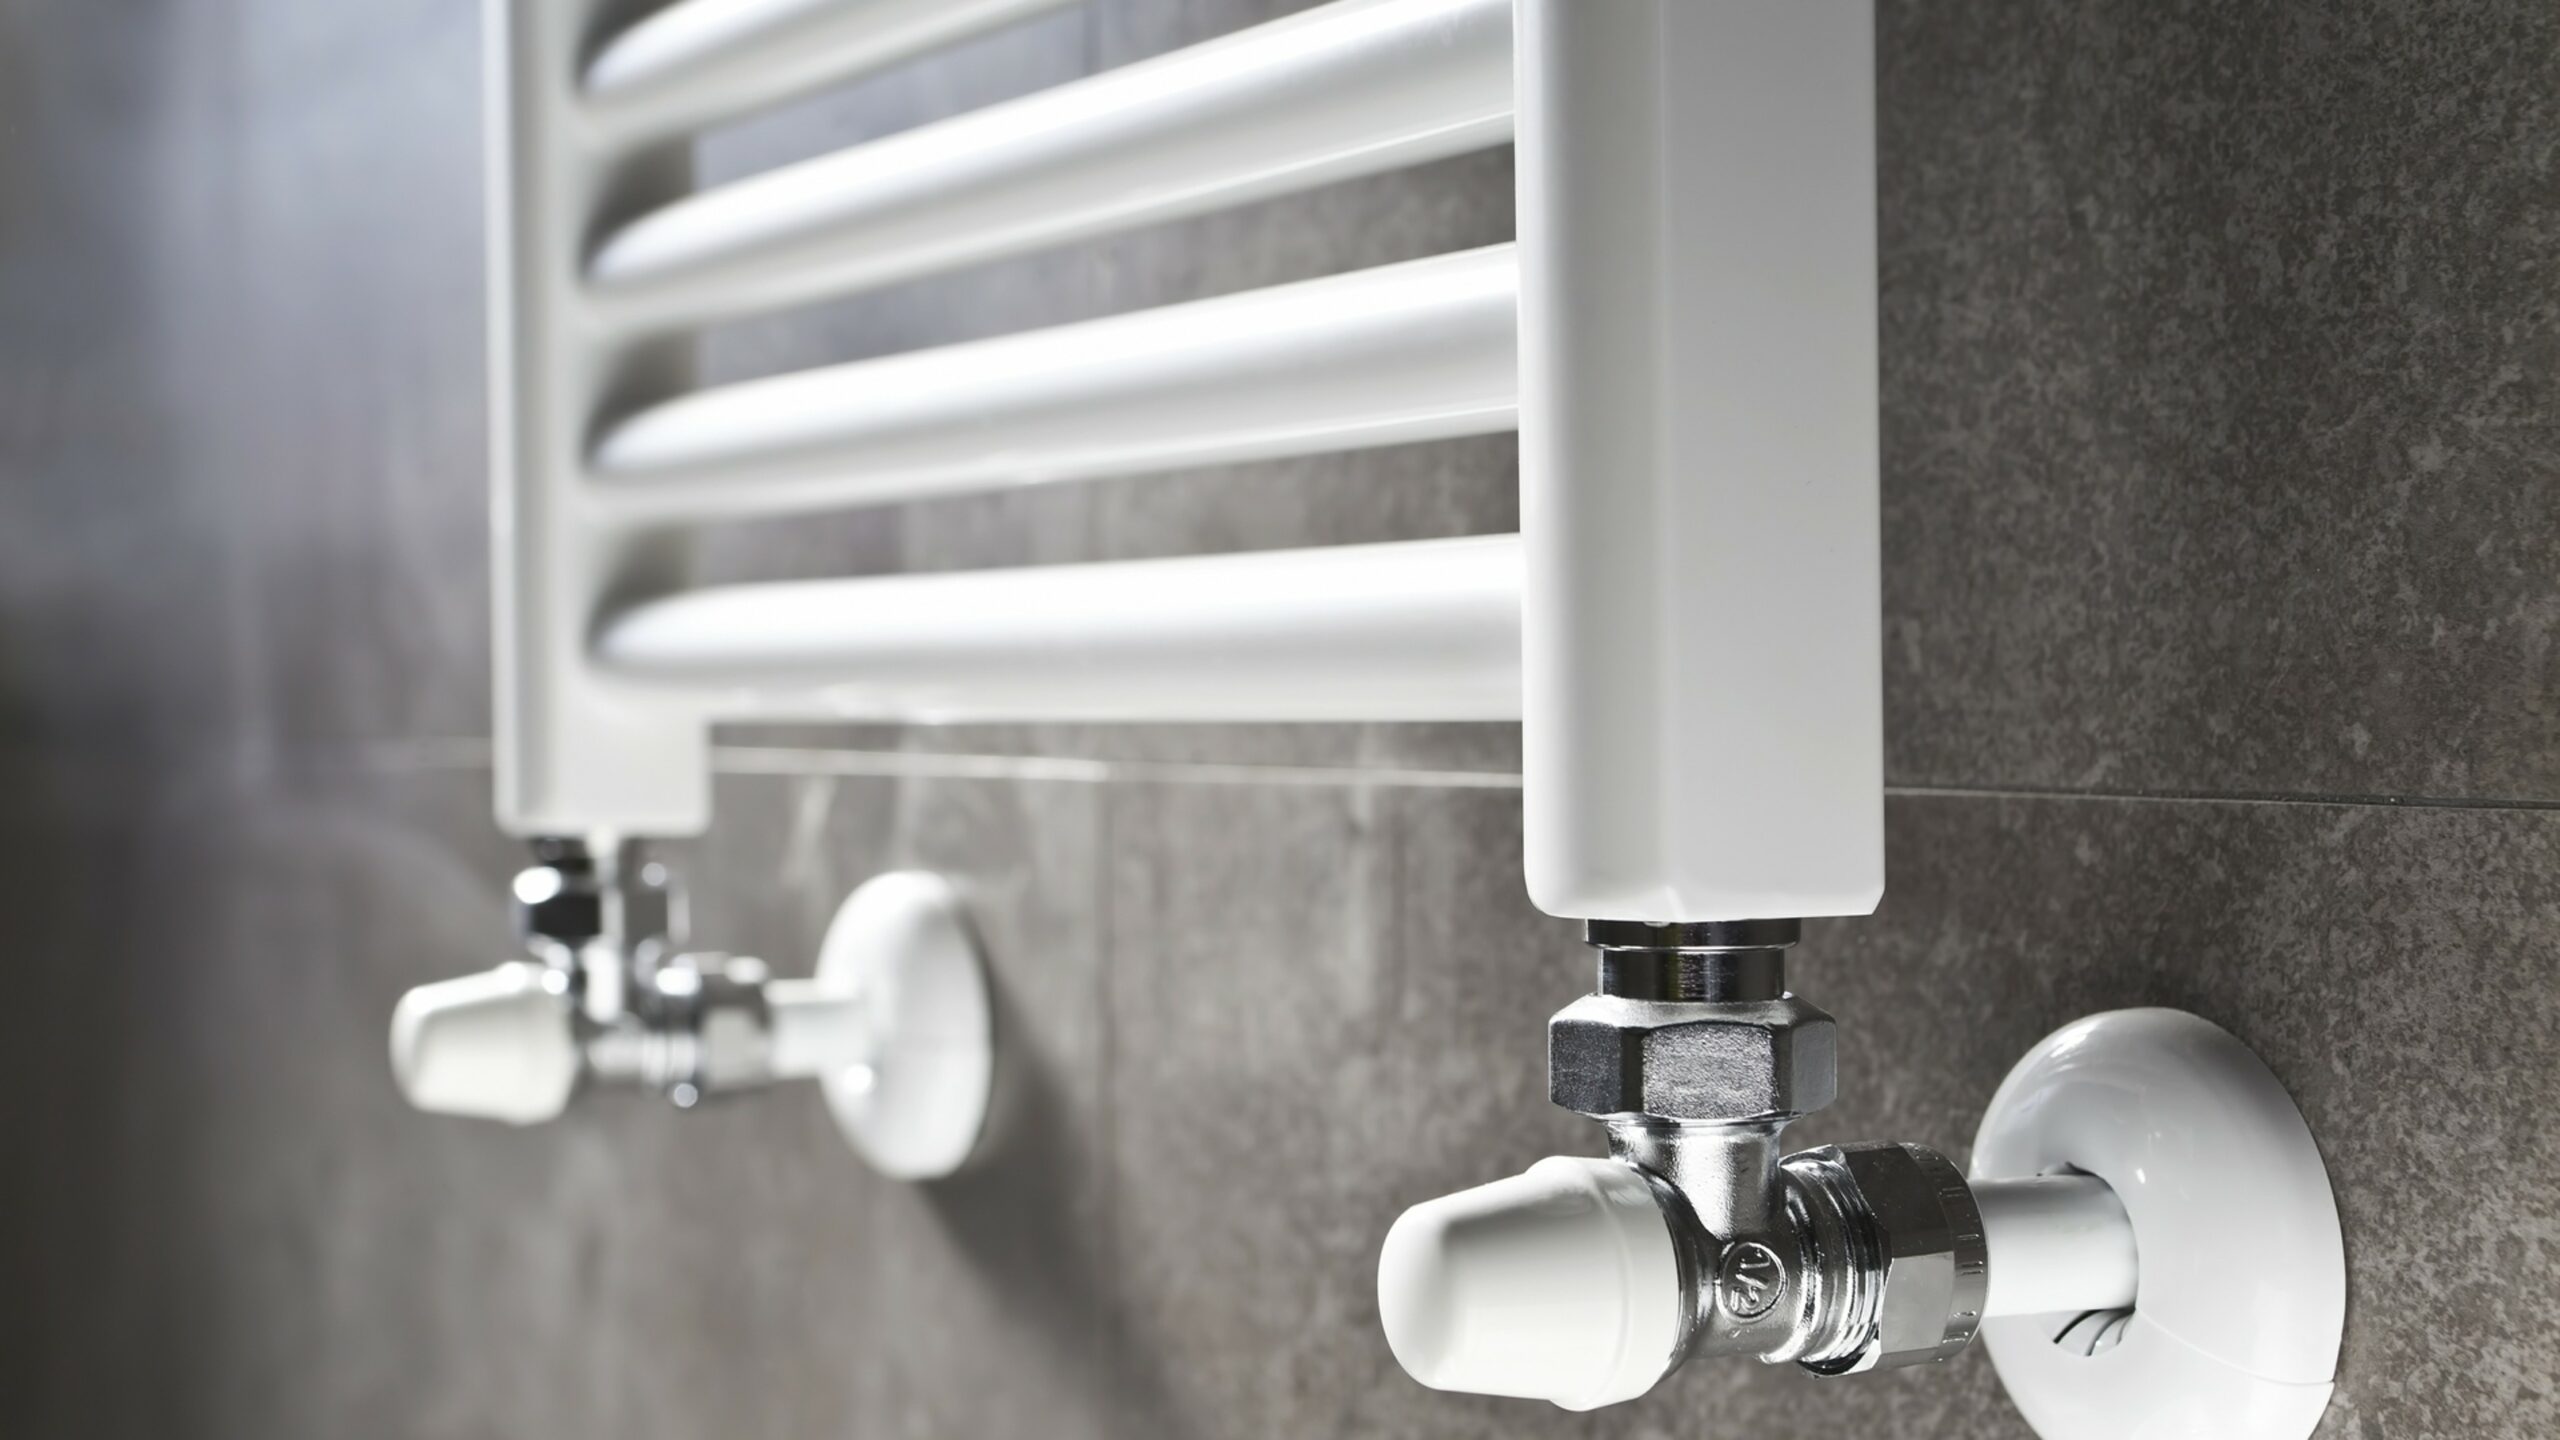 Terminal oppervlakkig pit Elektrische verwarming in de badkamer: soorten badkamerverwarming en  prijzen - Certiweb